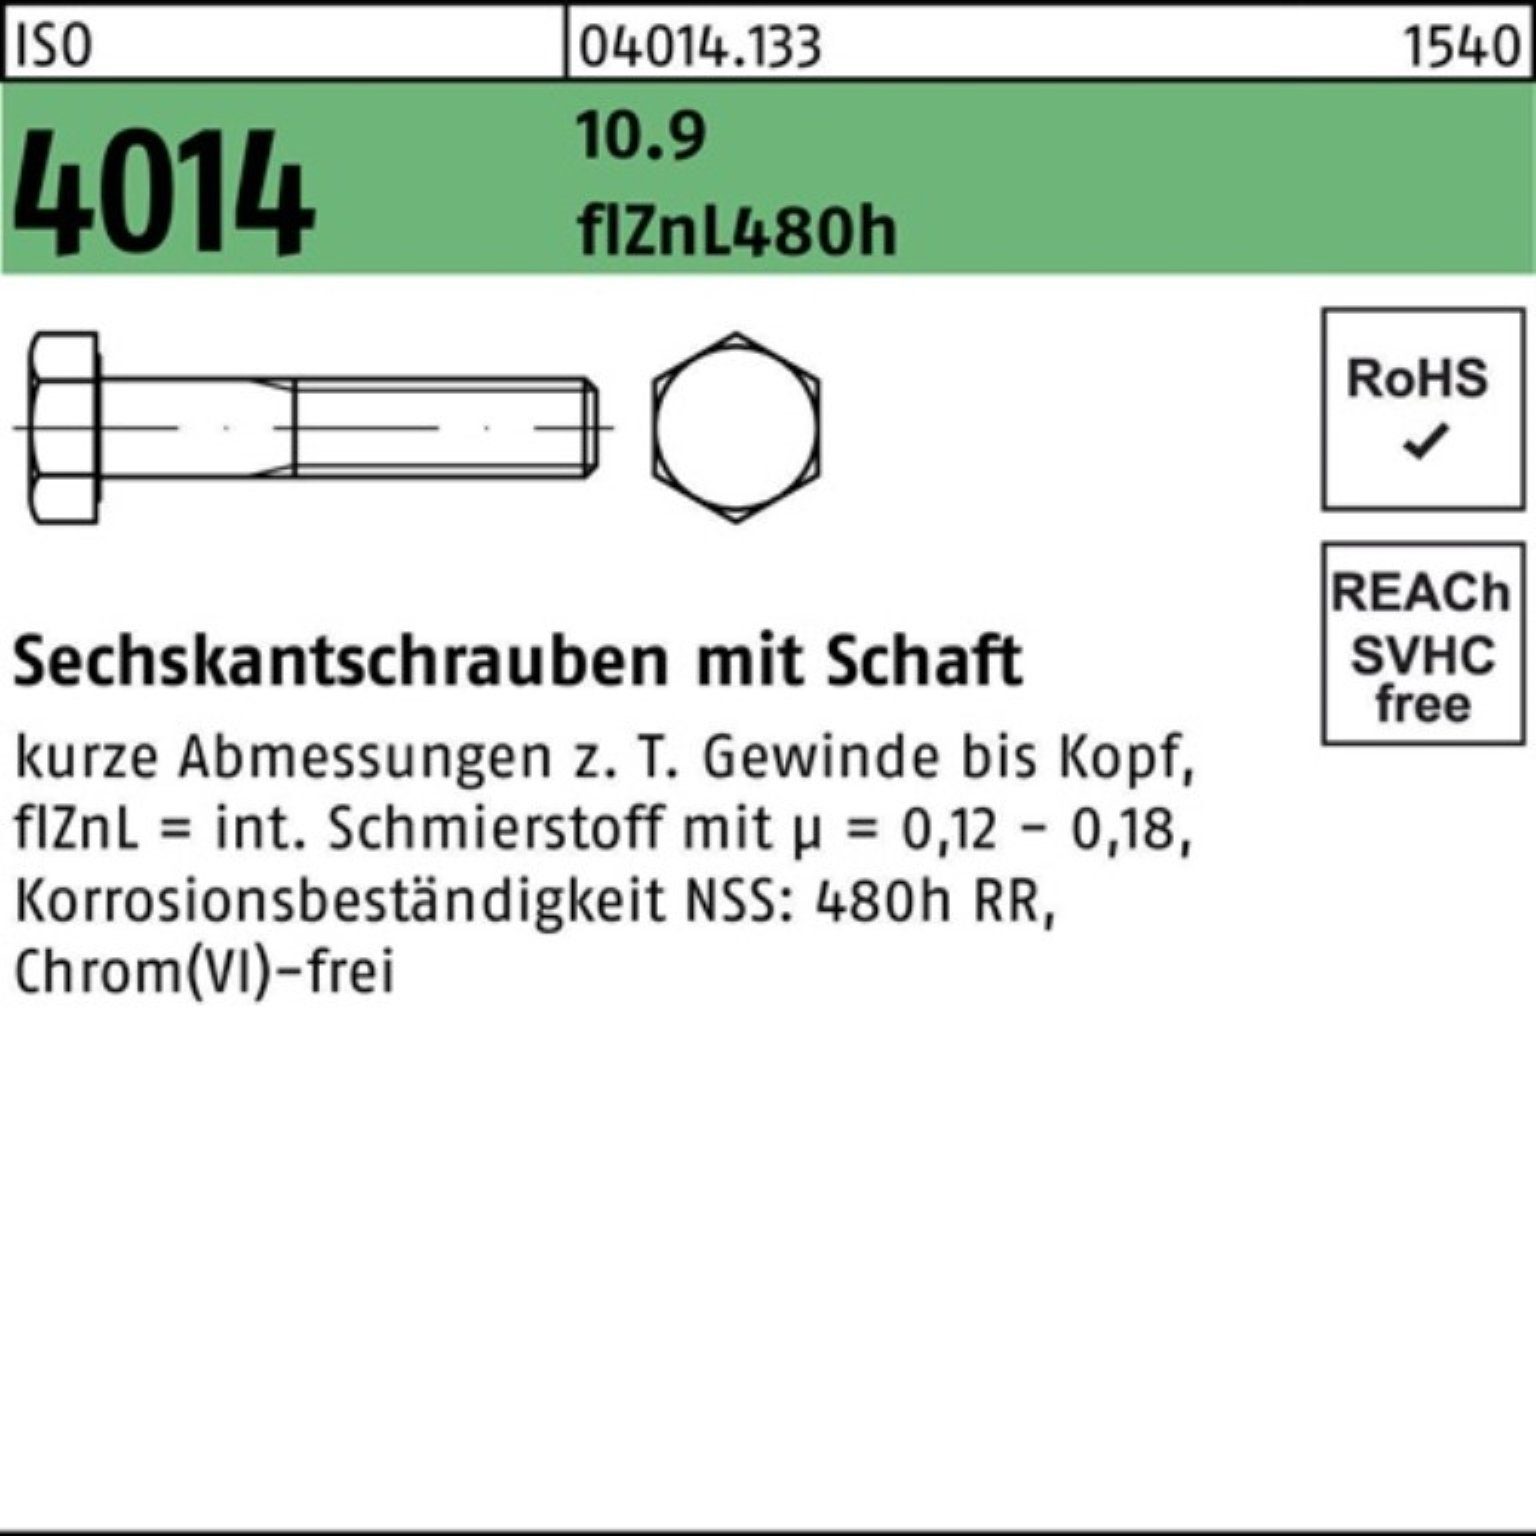 Bufab M10x Schaft Sechskantschraube ISO 110 Sechskantschraube 4014 10.9 zinklamelle Pack 100er